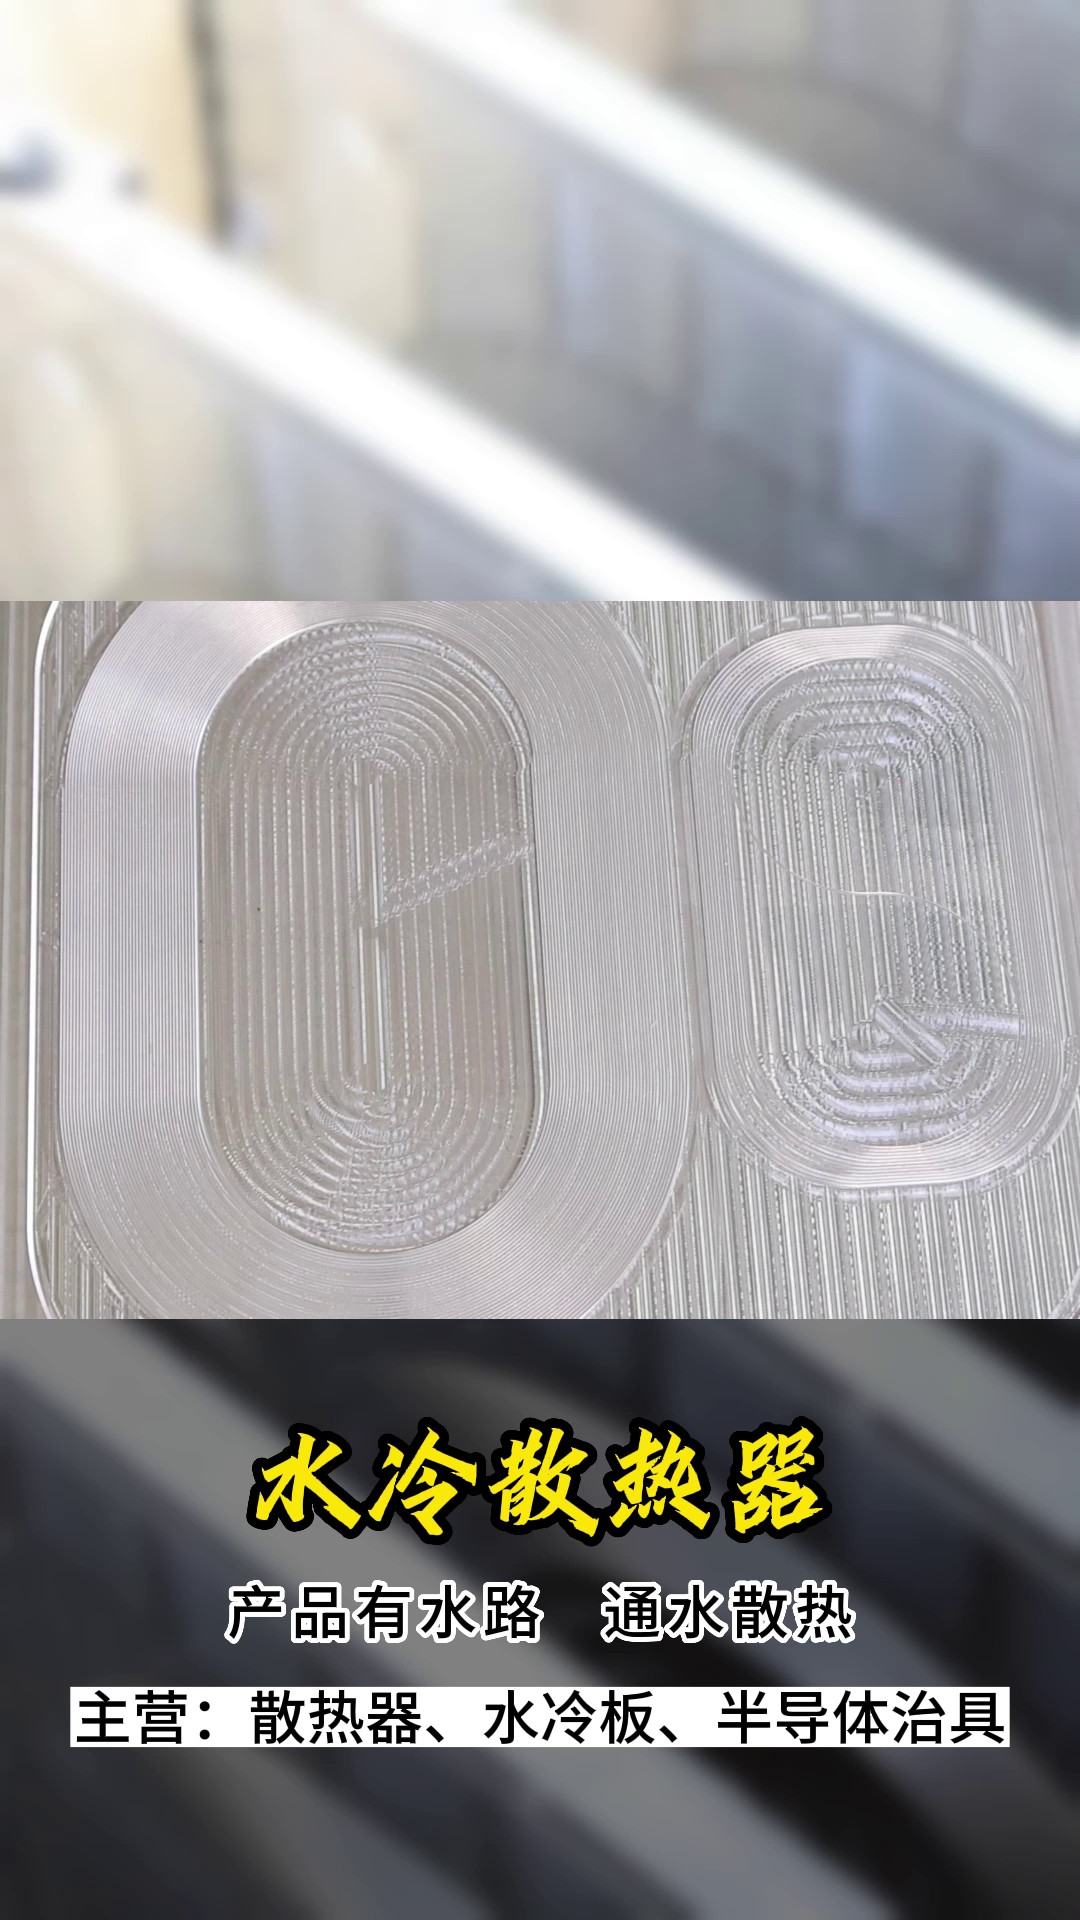 上海钎焊摩擦焊水冷板推荐厂家,摩擦焊水冷板